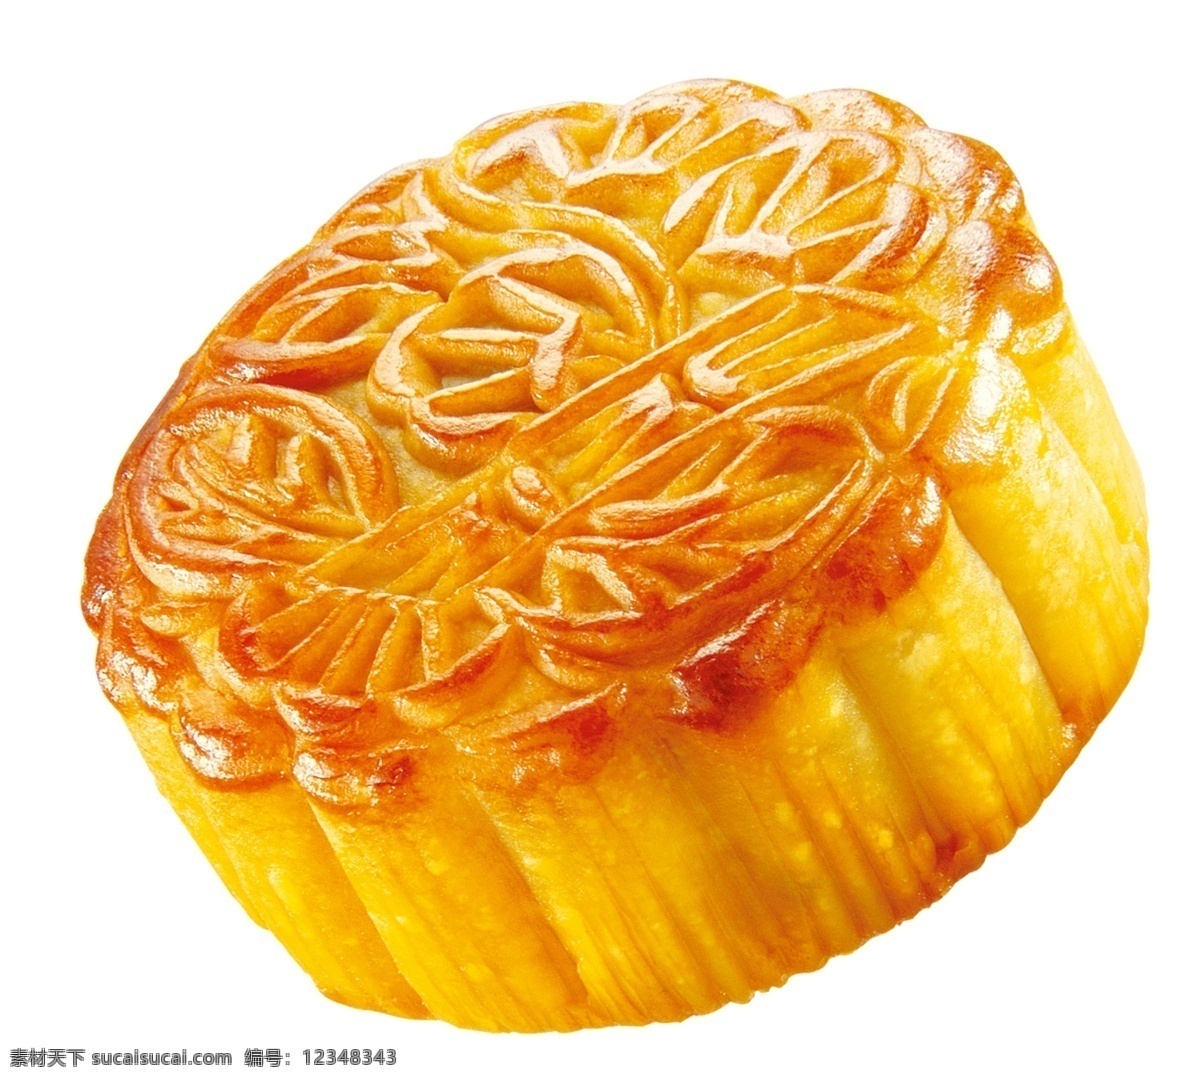 一块 美味 中秋月饼 团圆 节日 喜庆 月饼 食材 中秋 假日 开心 食物